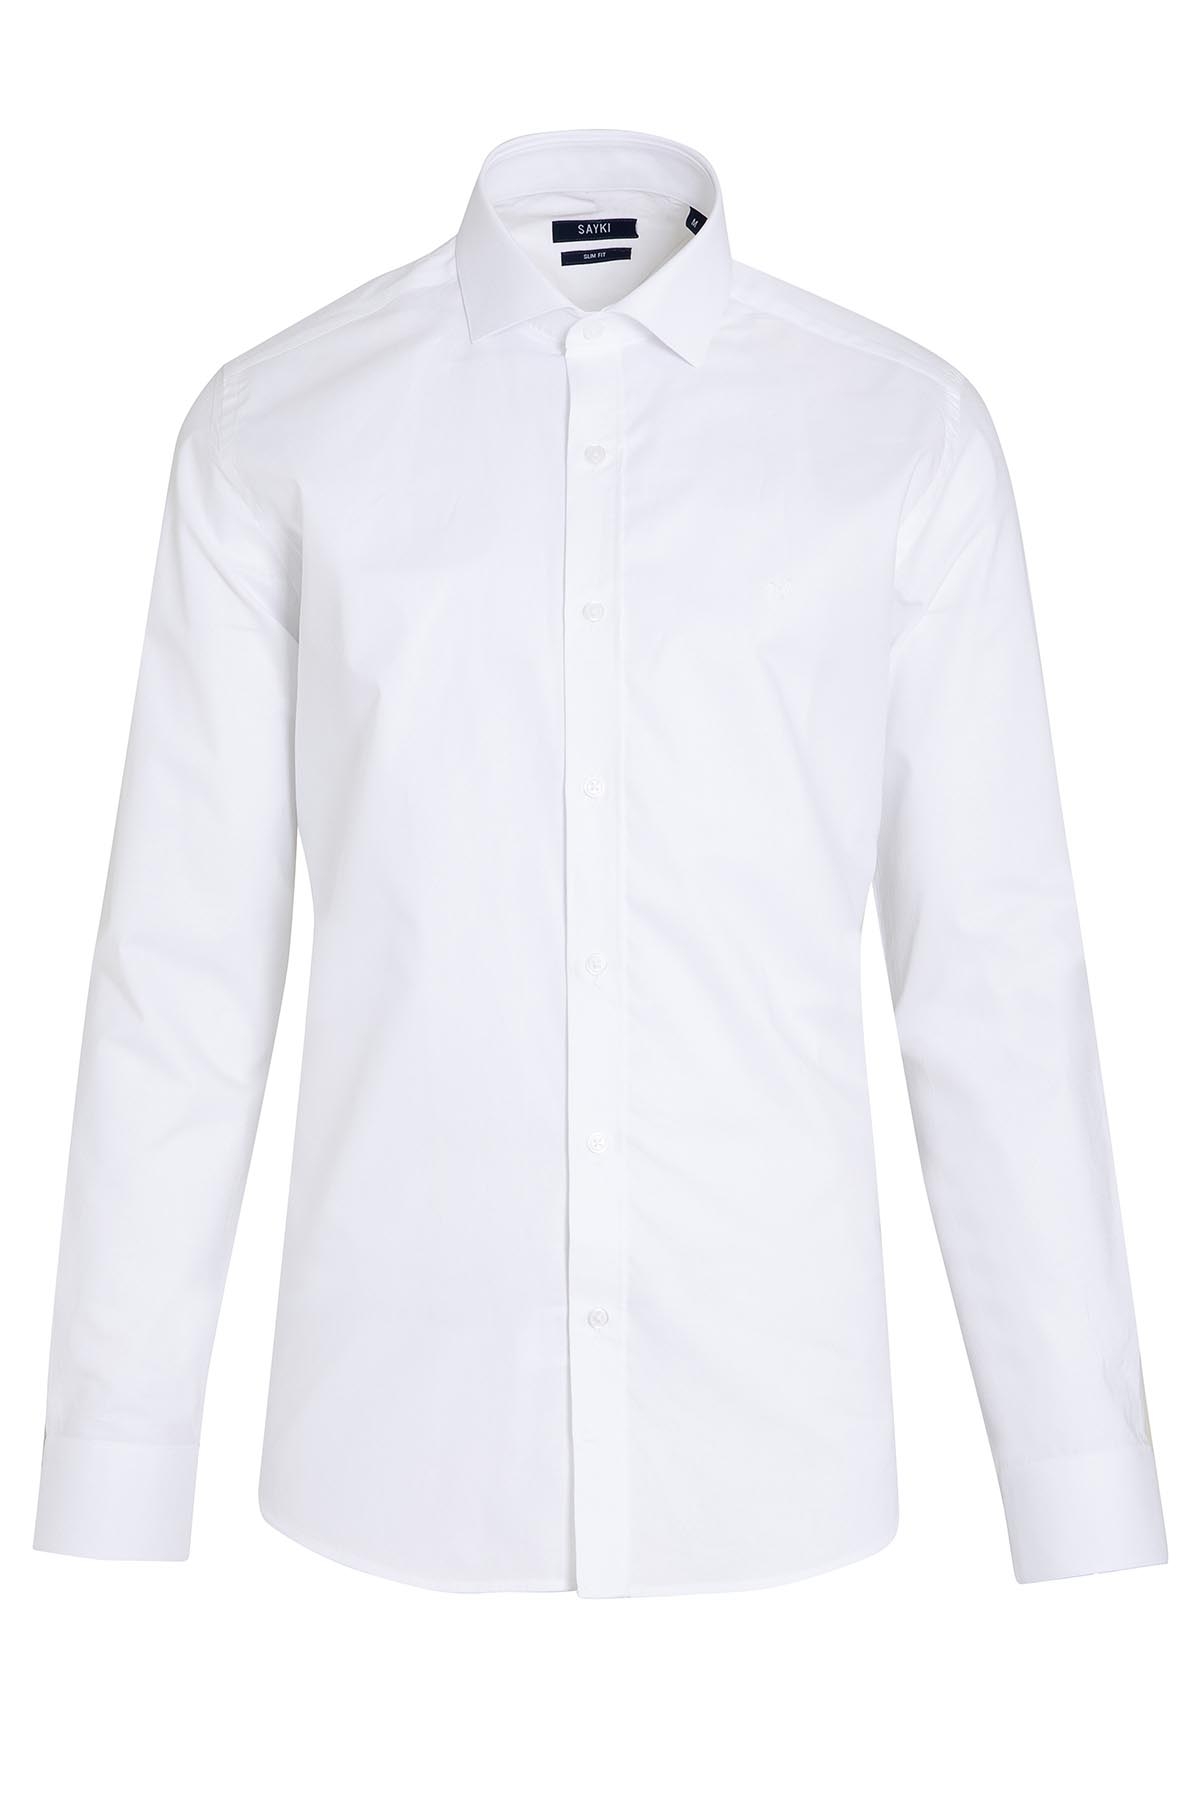 Beyaz Slim Fit Desenli 100% Pamuk Açık İtalyan Yaka Uzun Kollu Klasik Gömlek